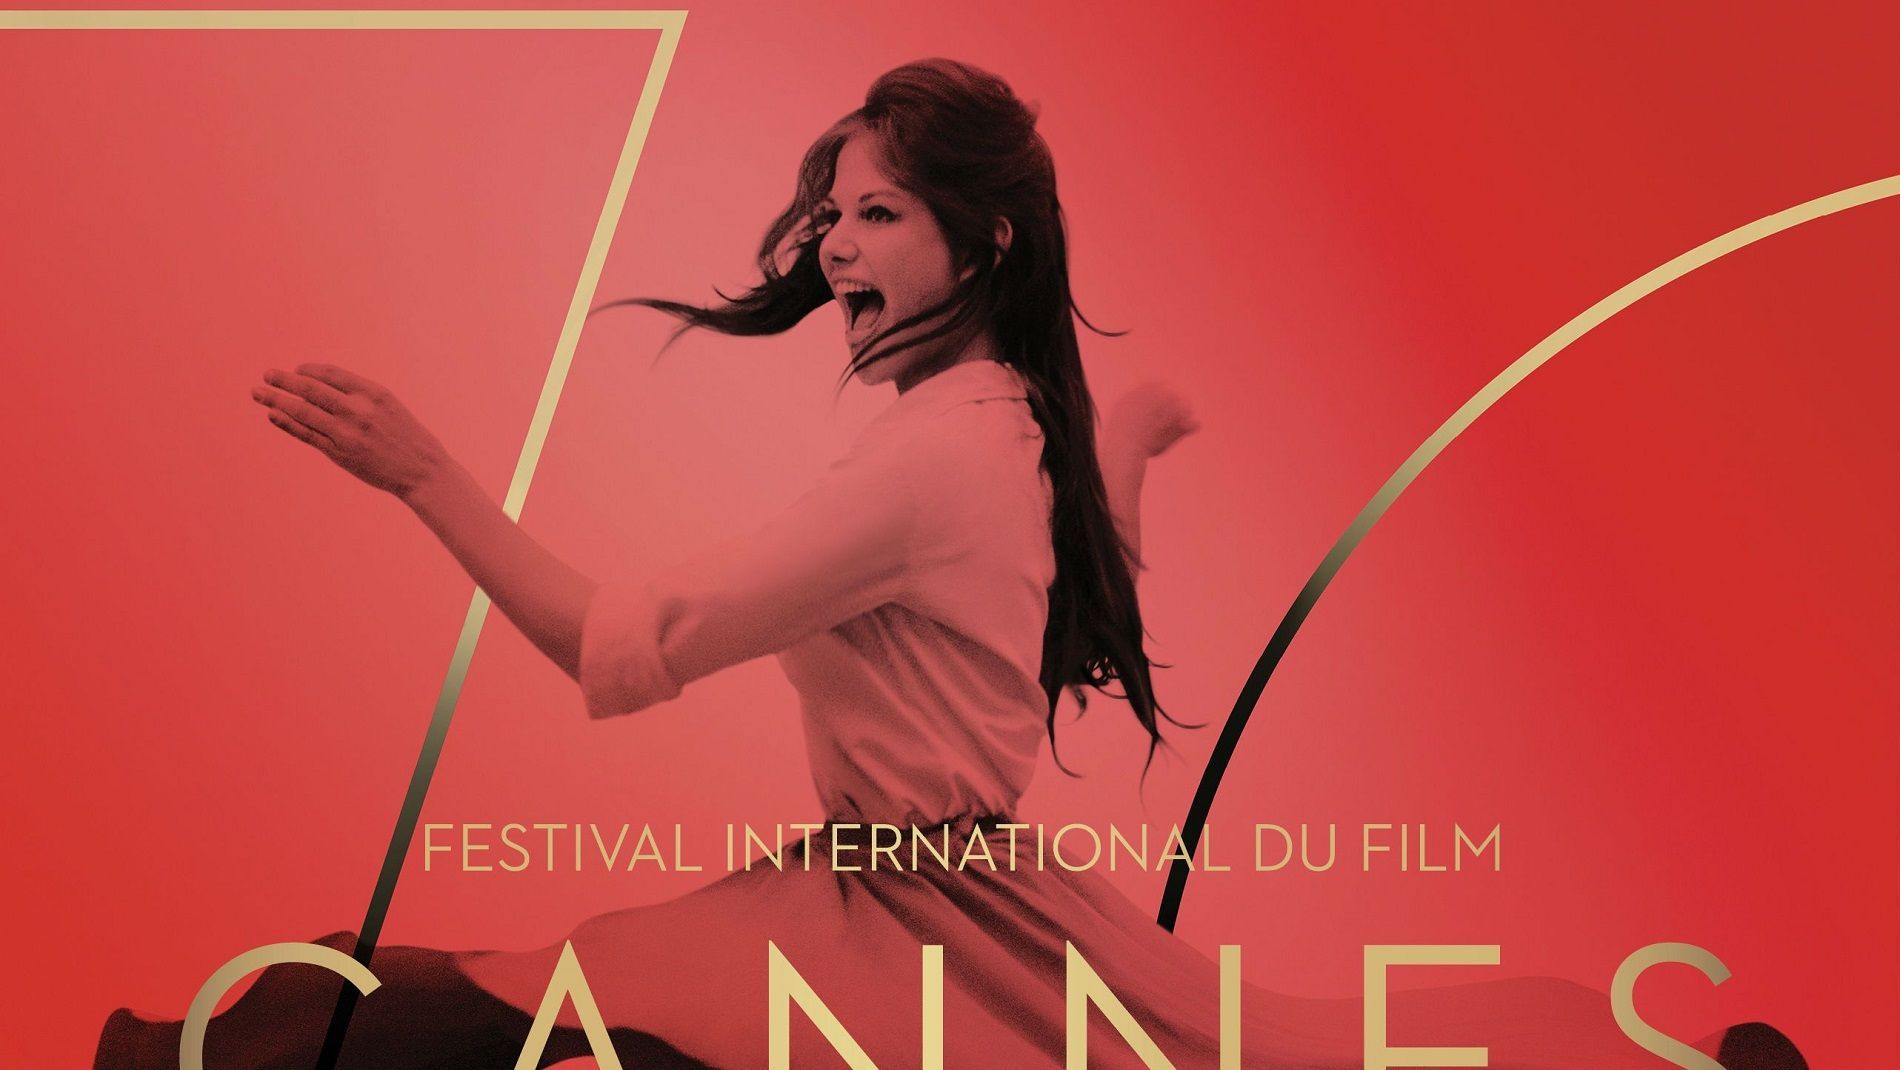 Hanno osato photoshoppare Claudia Cardinale nel poster di Cannes 2017